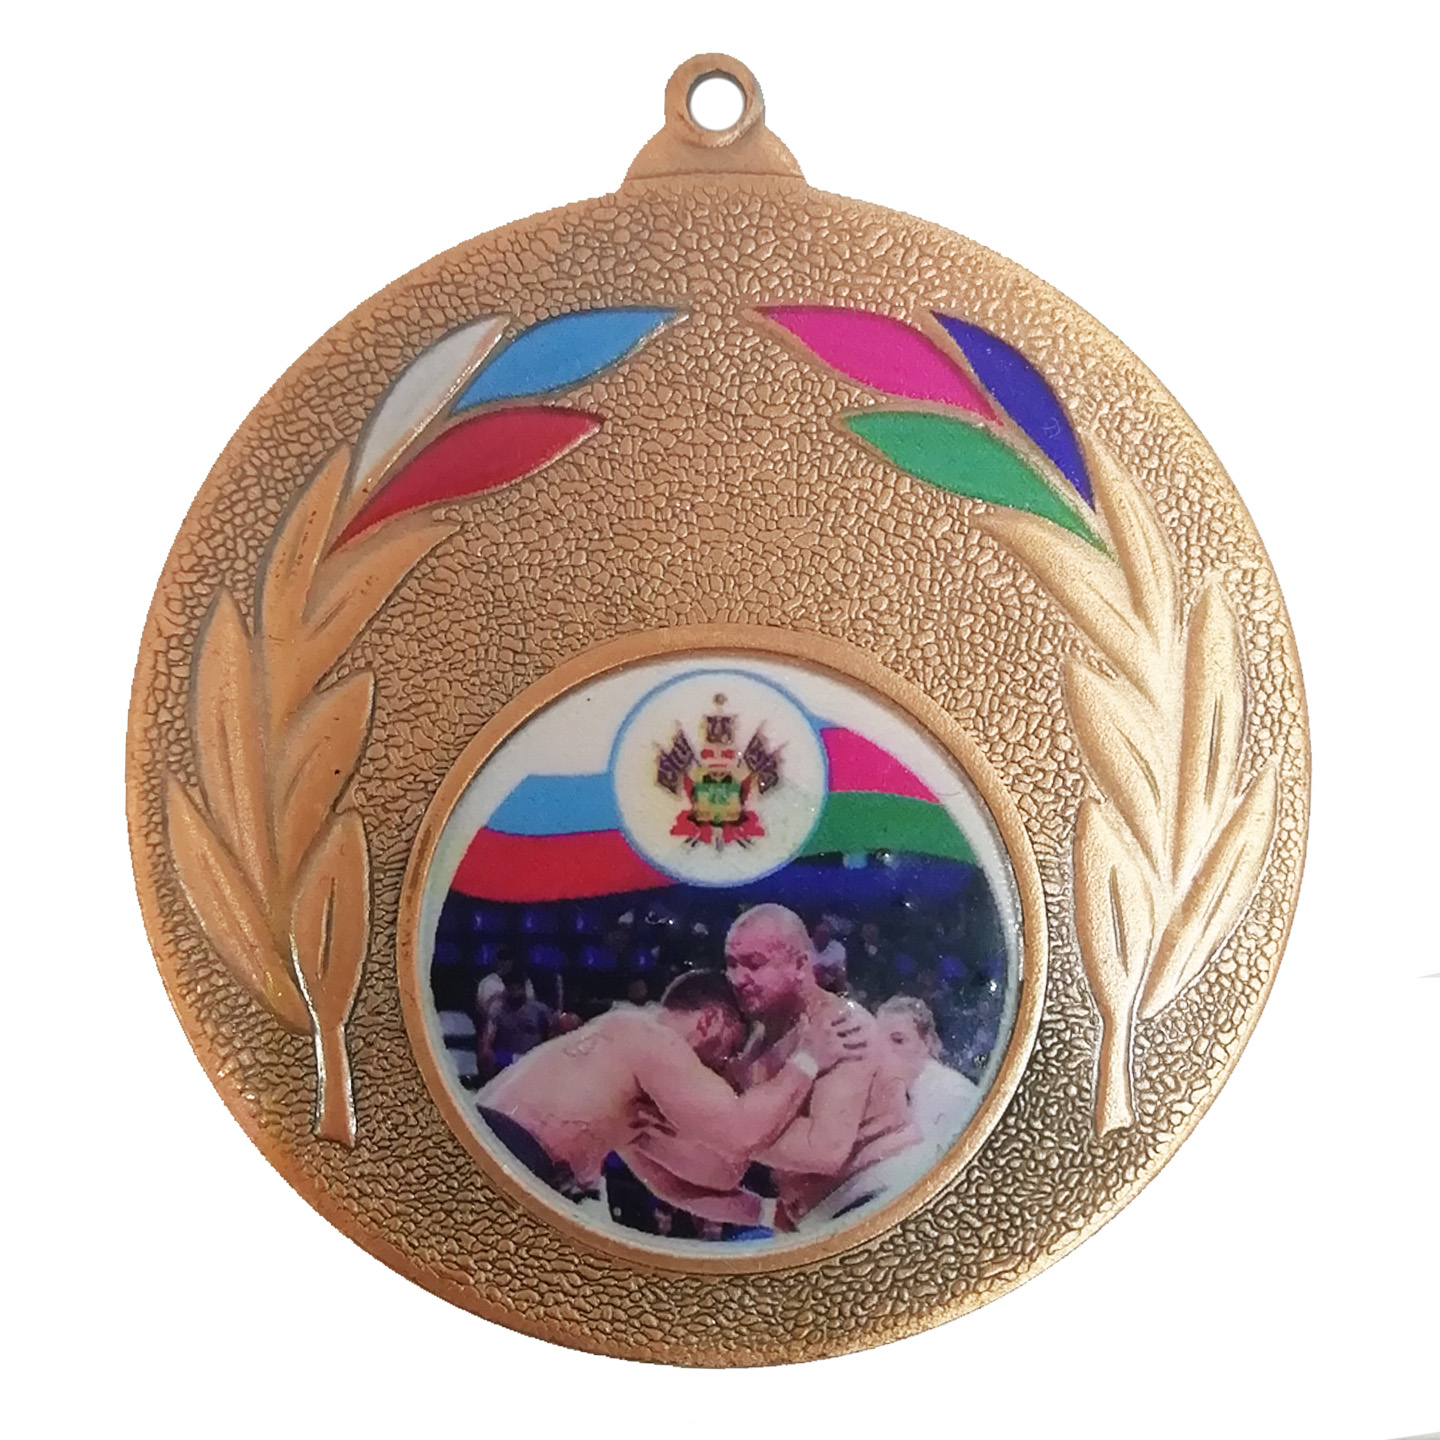 Медаль мд163,Первенство России по сумо,  